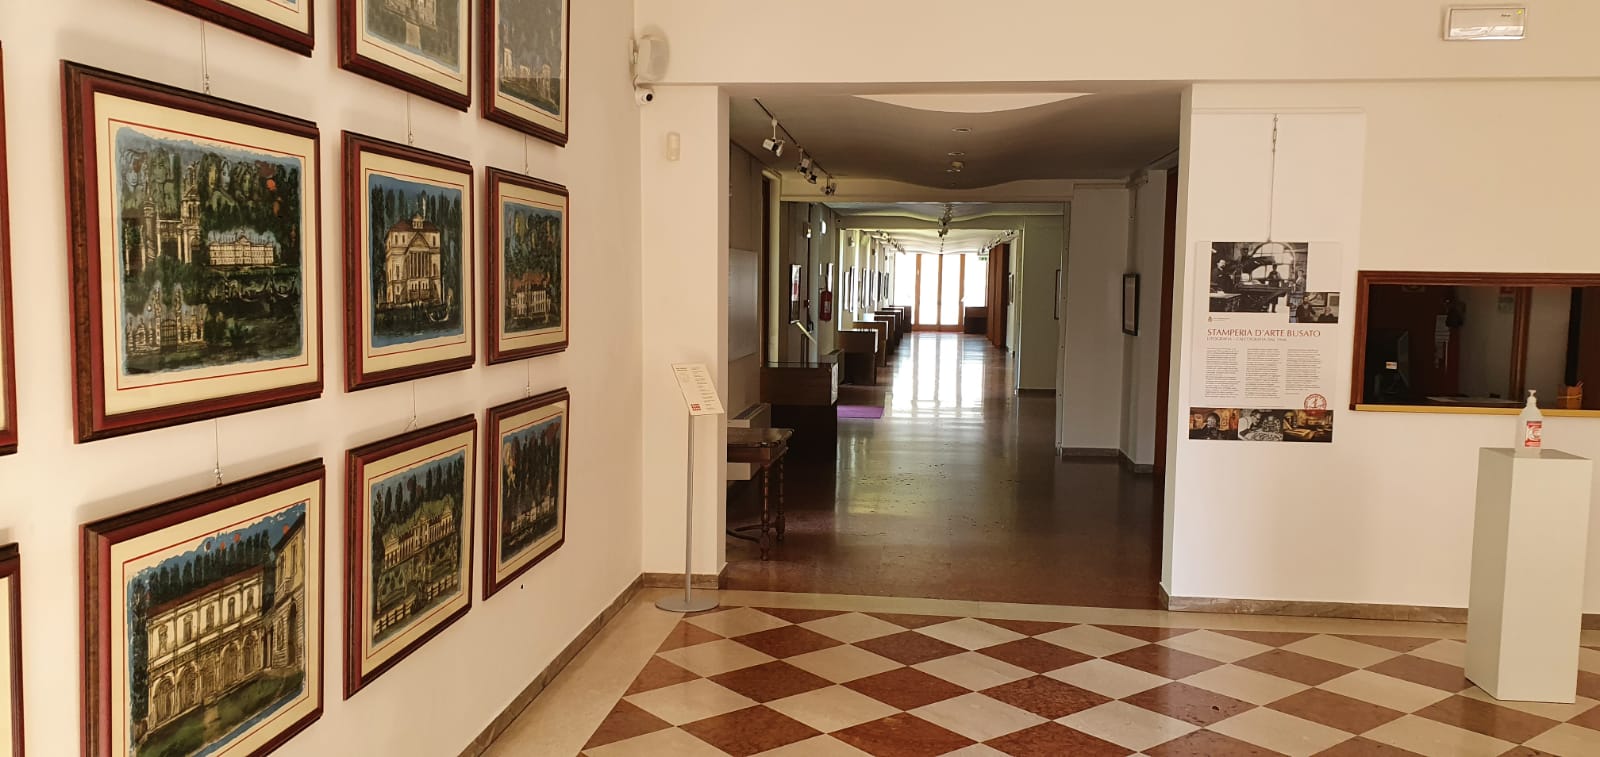 Cultura Castelfranco, domani riapre la mostra "Maestri del Novecento"